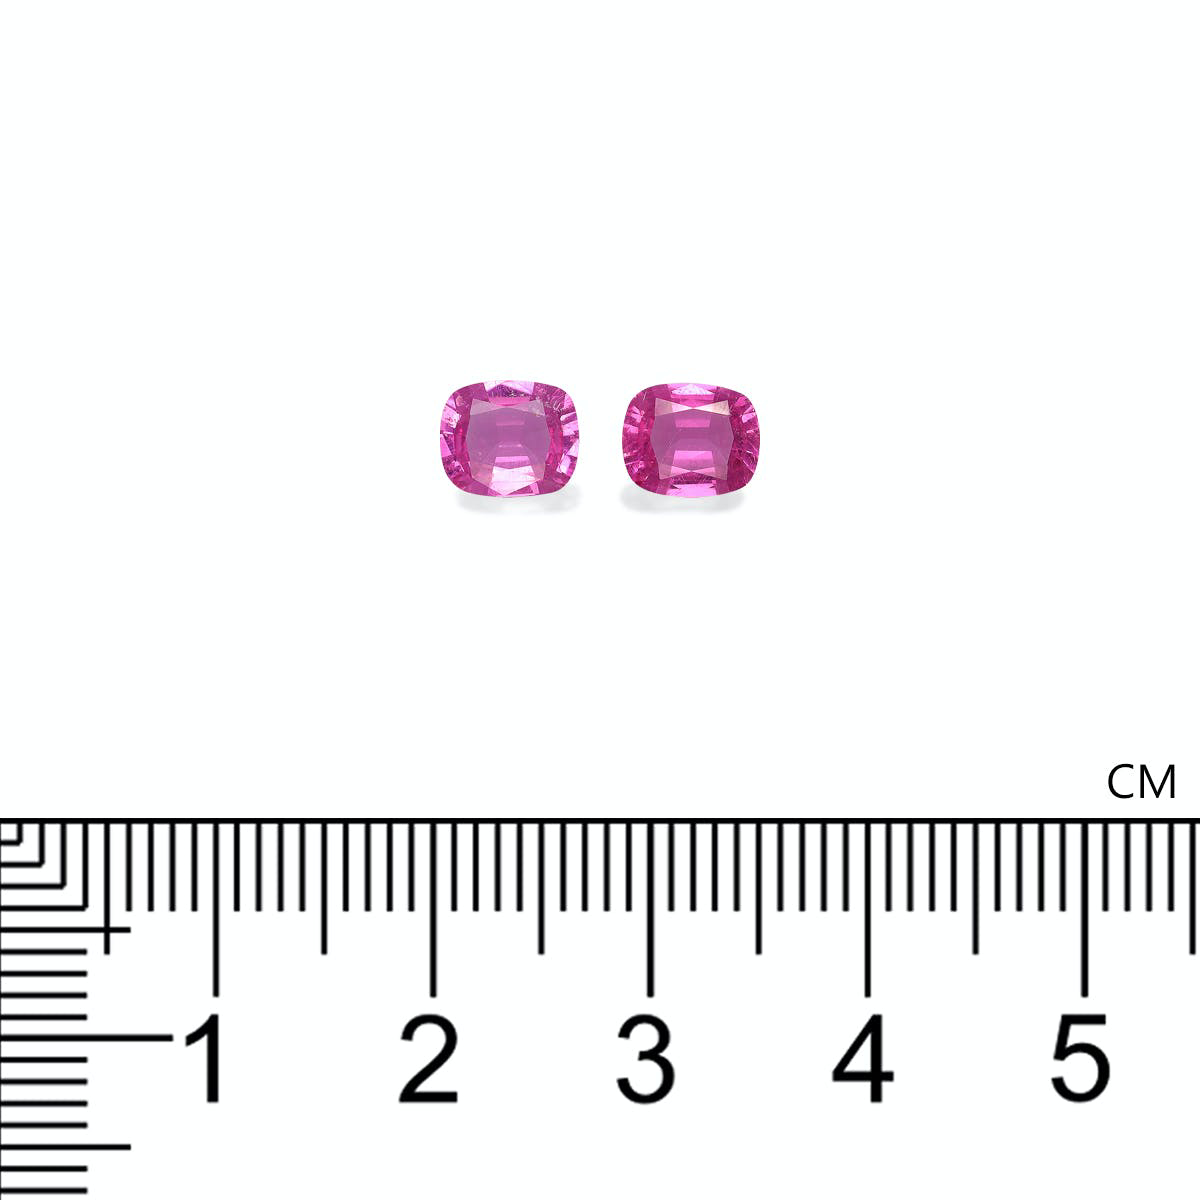 Fuscia Pink Rubellite Tourmaline 1.40ct - Pair (RL1291)